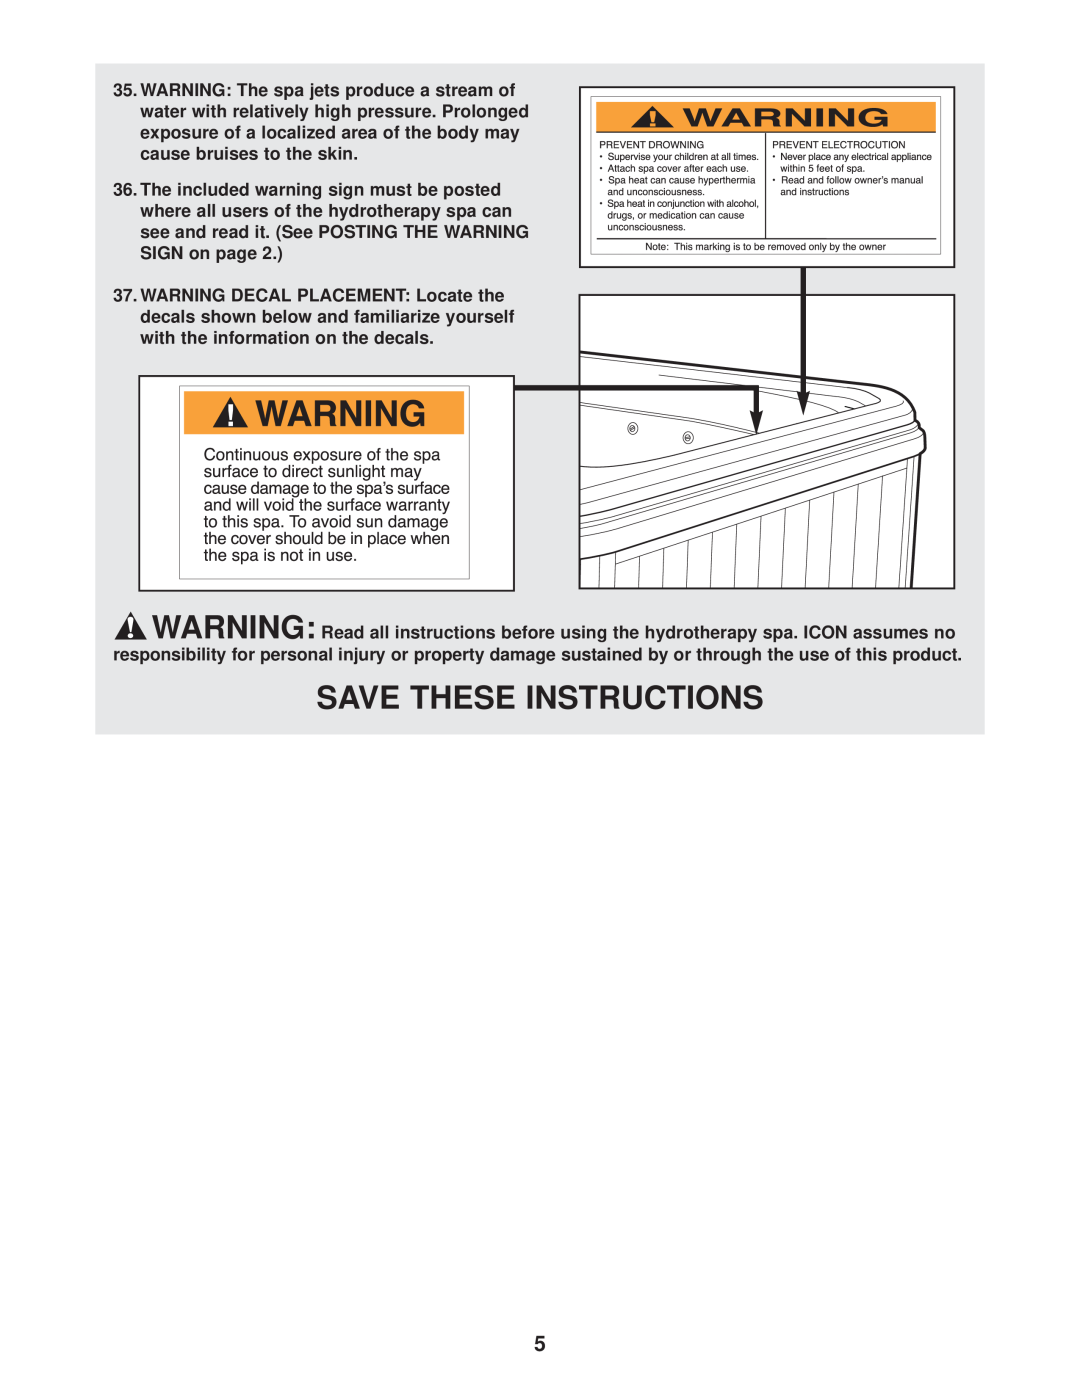 Image IMSB73911, IMSG73911 user manual Save These Instructions 